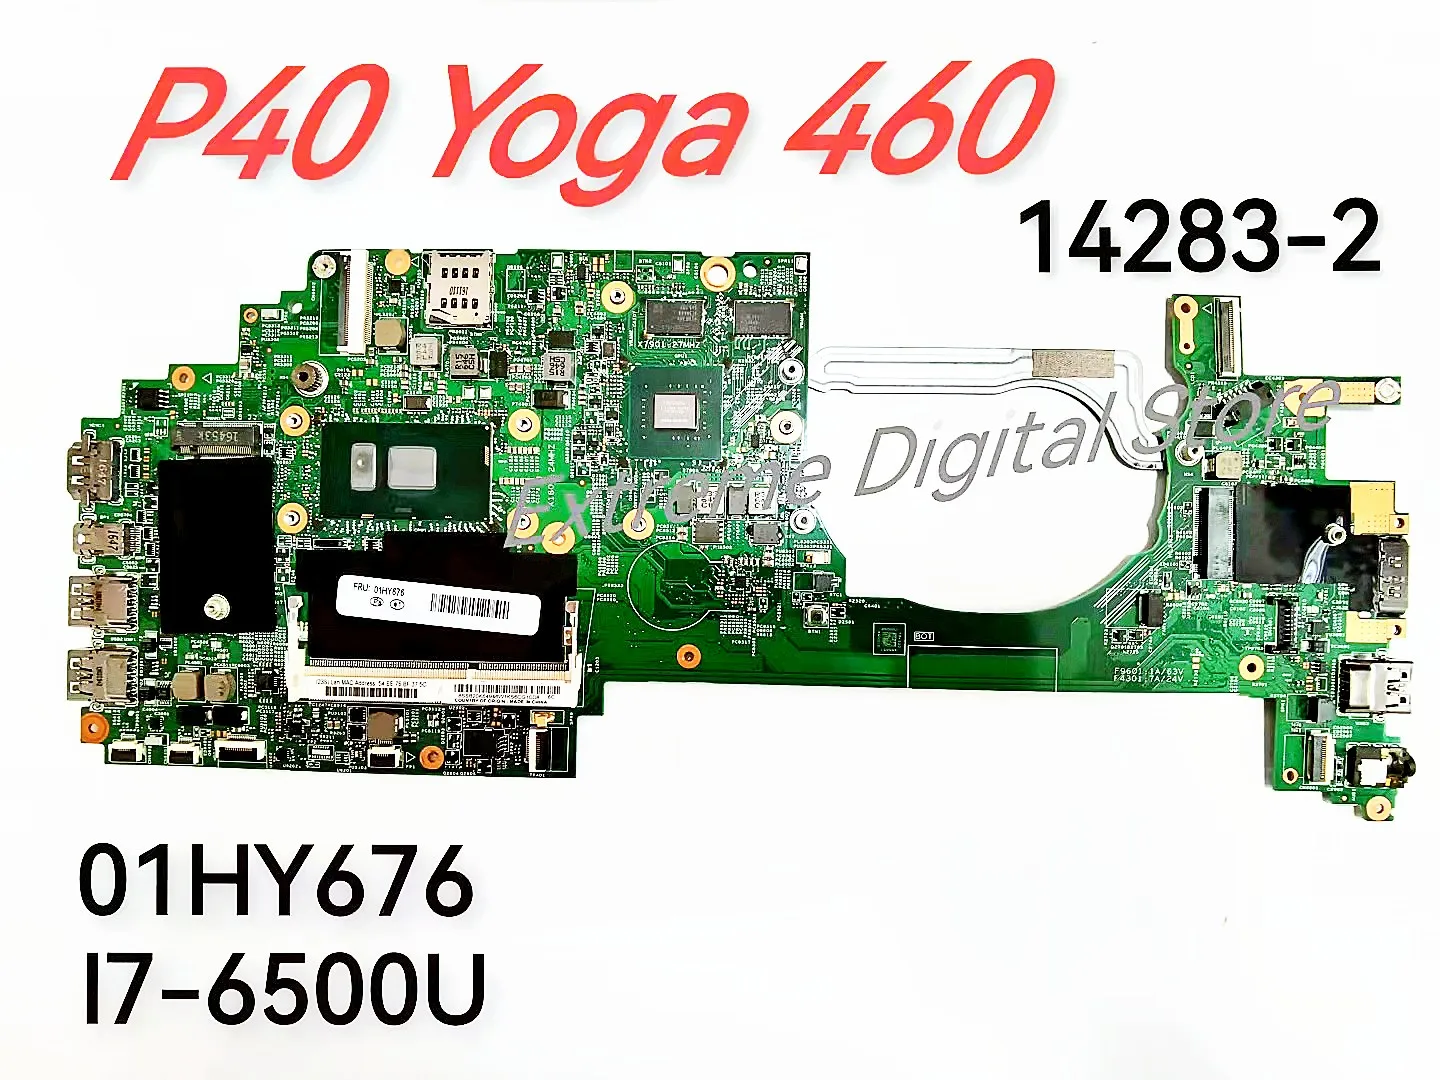 Независимая материнская плата 14283-2 для ноутбука Lenovo YOGA 460 /P40 YOGA Процессор: I7-6500 2G 100% тест В порядке перед отправкой